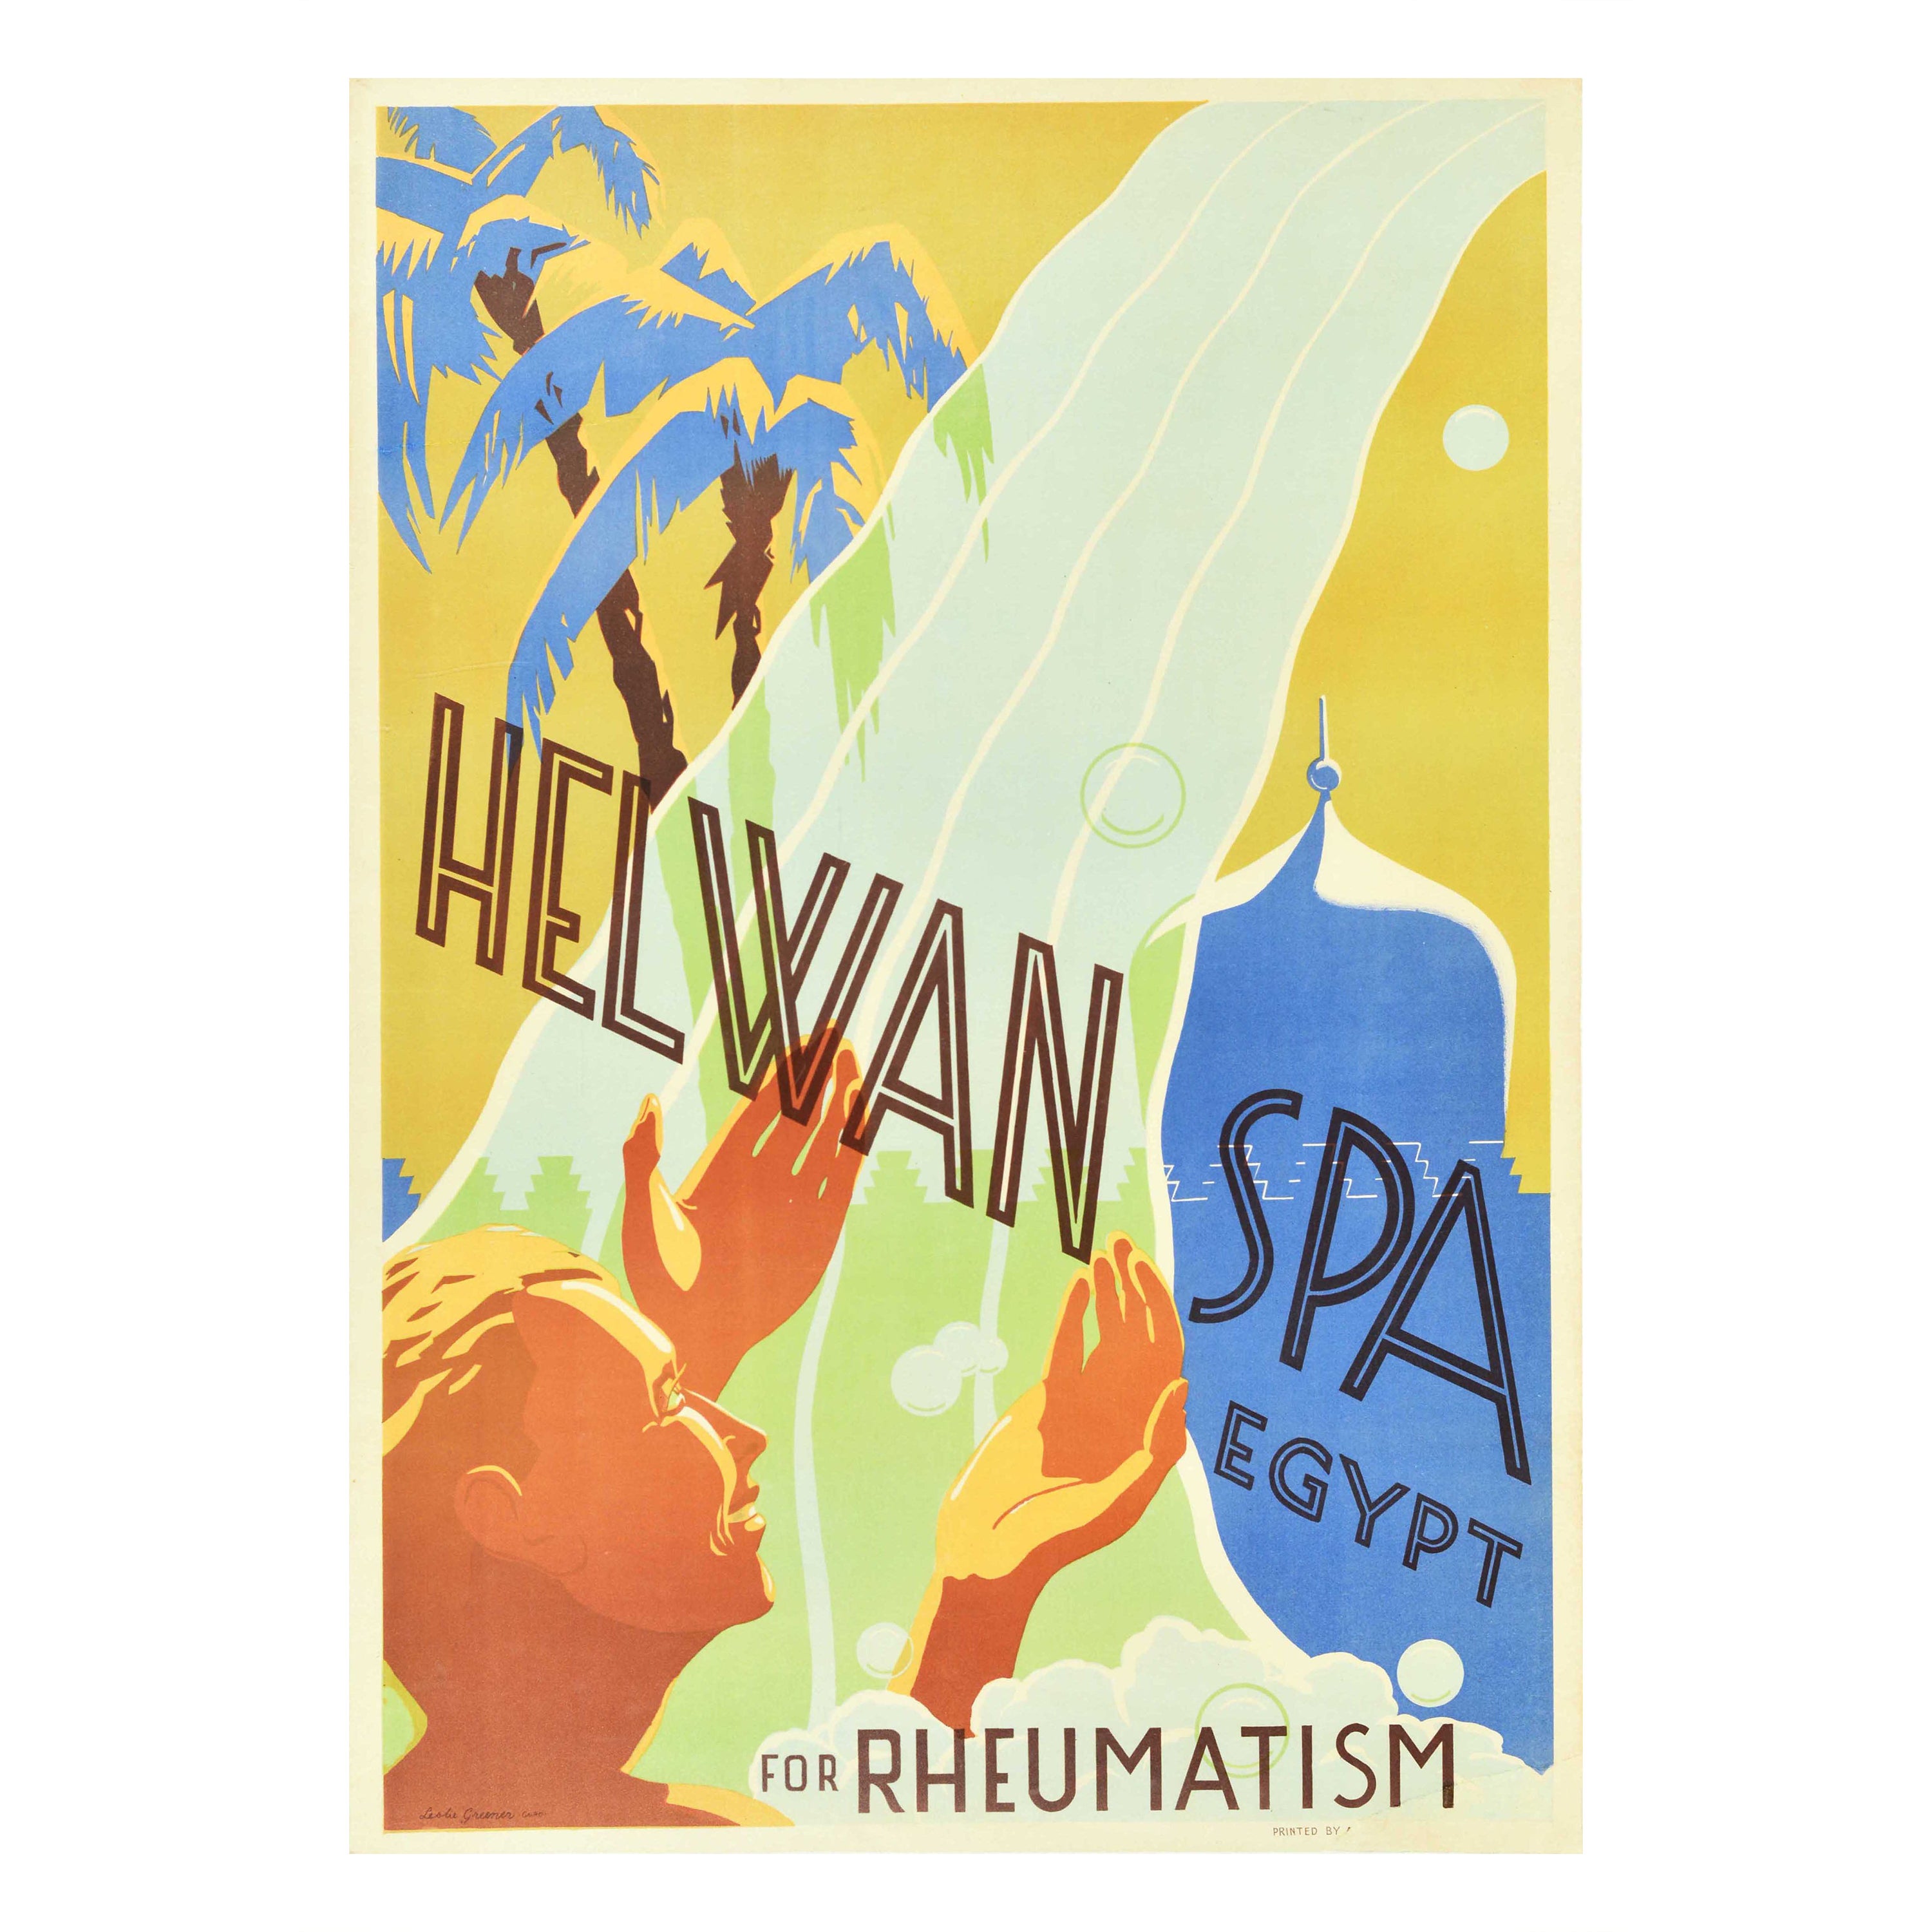 Affiche ancienne d'origine Helwan Spa Égypte pour la santé et le rhumatisme, Art de voyage